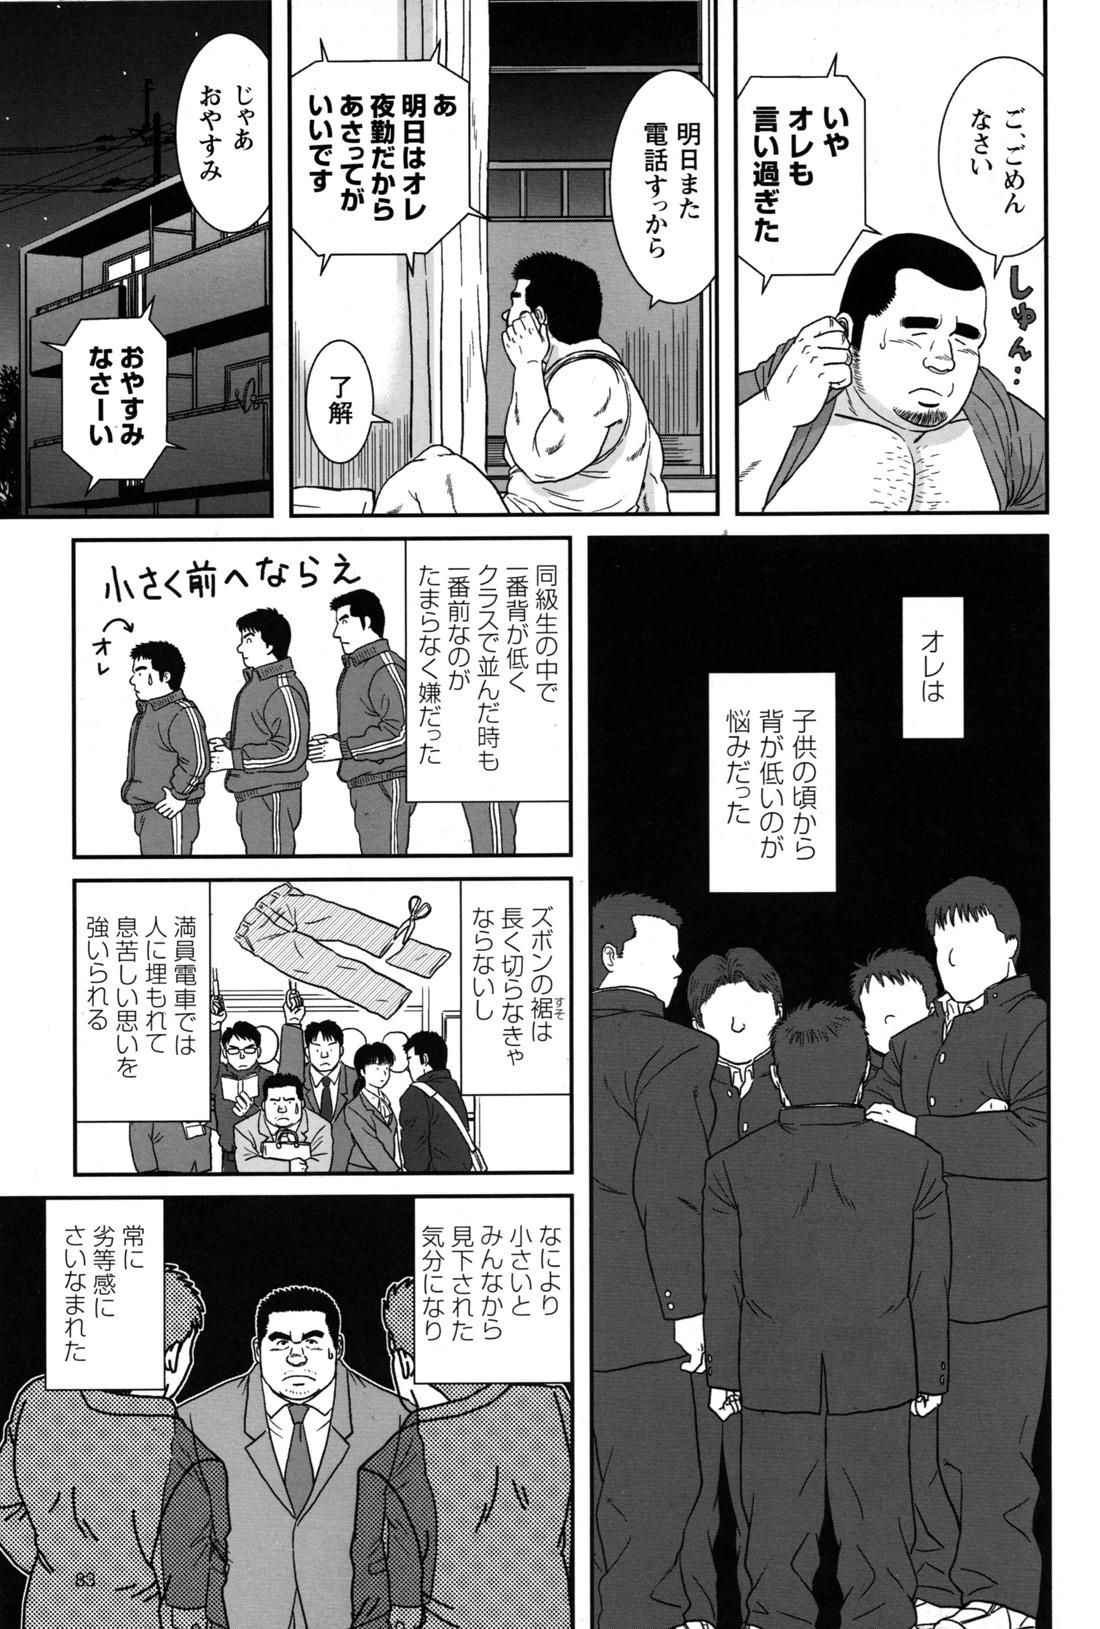 Comic G-men Gaho No.09 Gacchibi Zeme 78